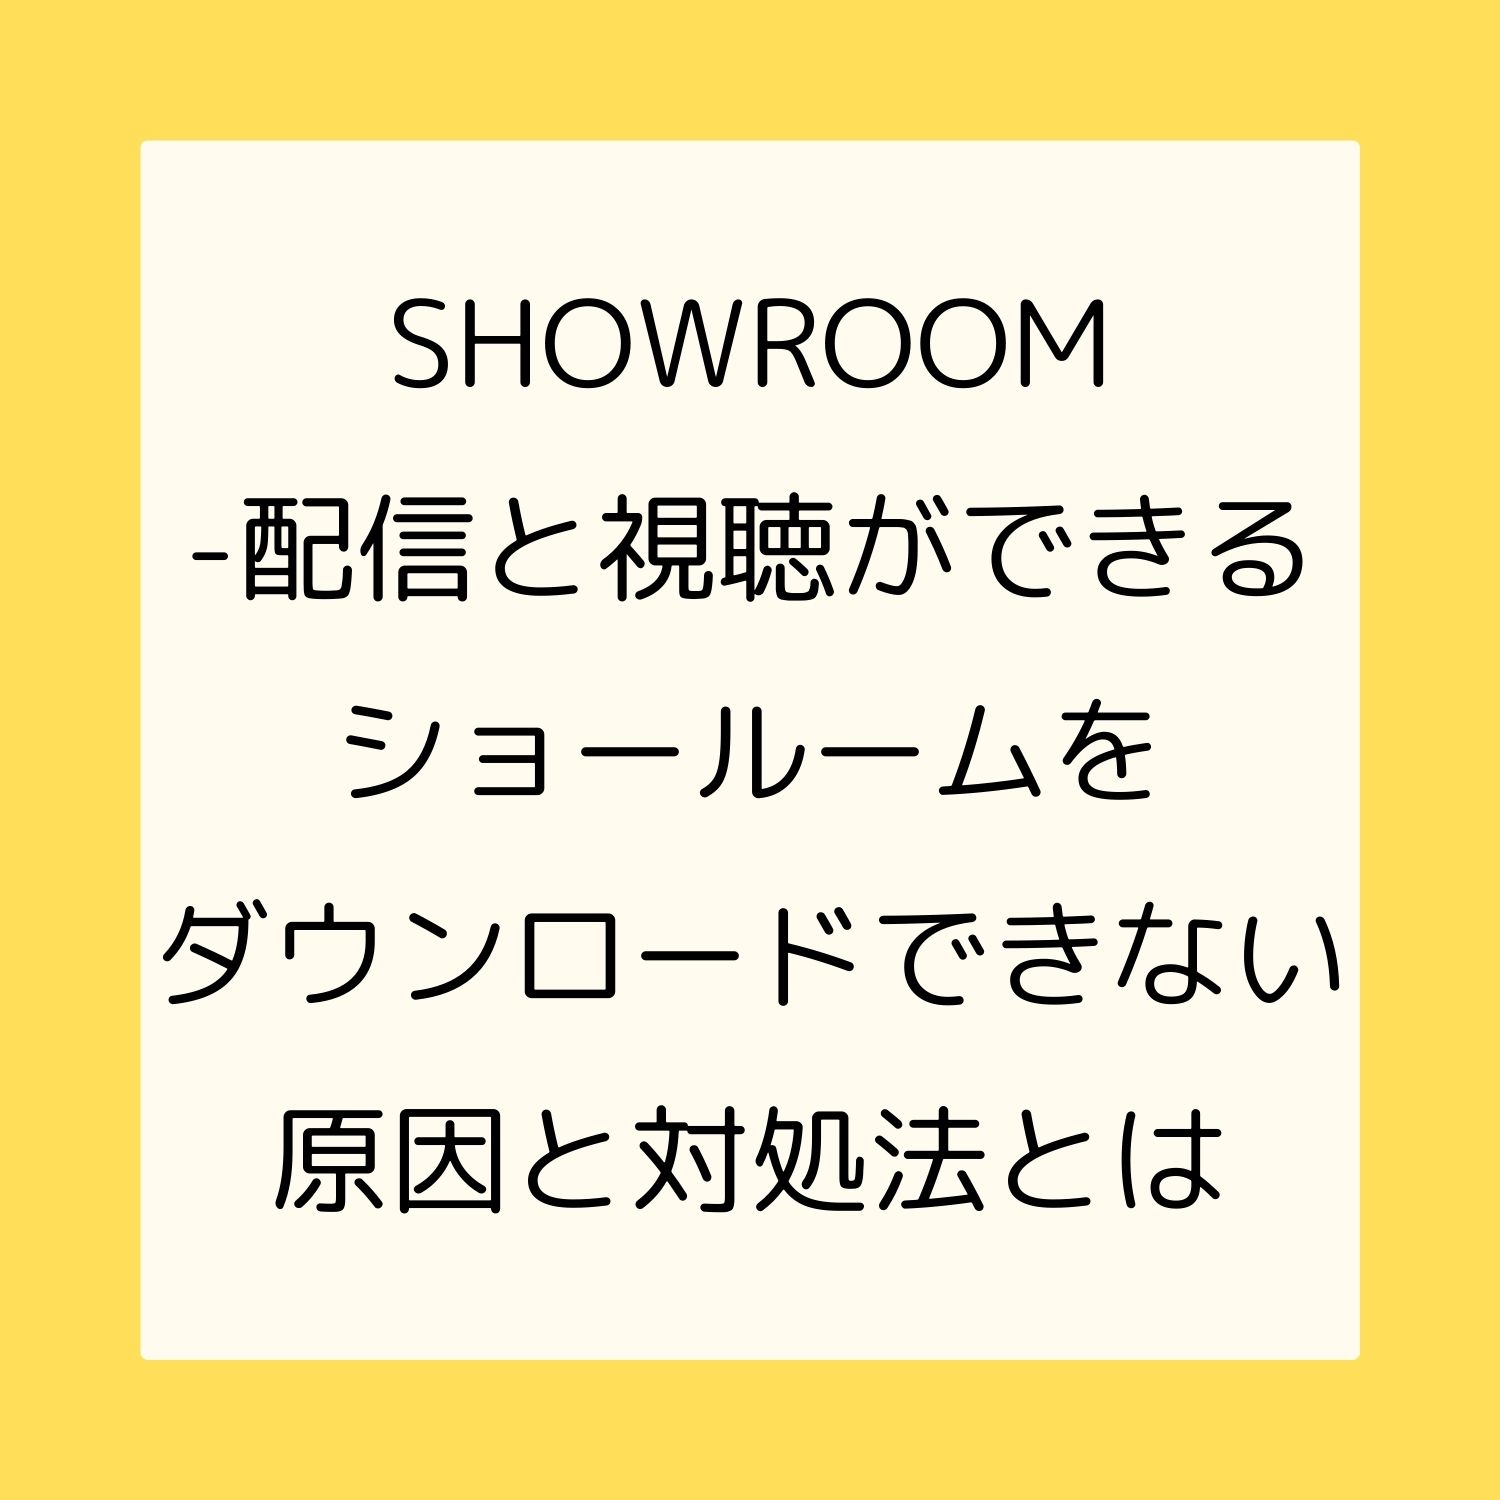 SHOWROOM - 配信と視聴ができるショールームをダウンロードできない原因と対処法とは #SHOWROOM - 配信と視聴ができるショールーム